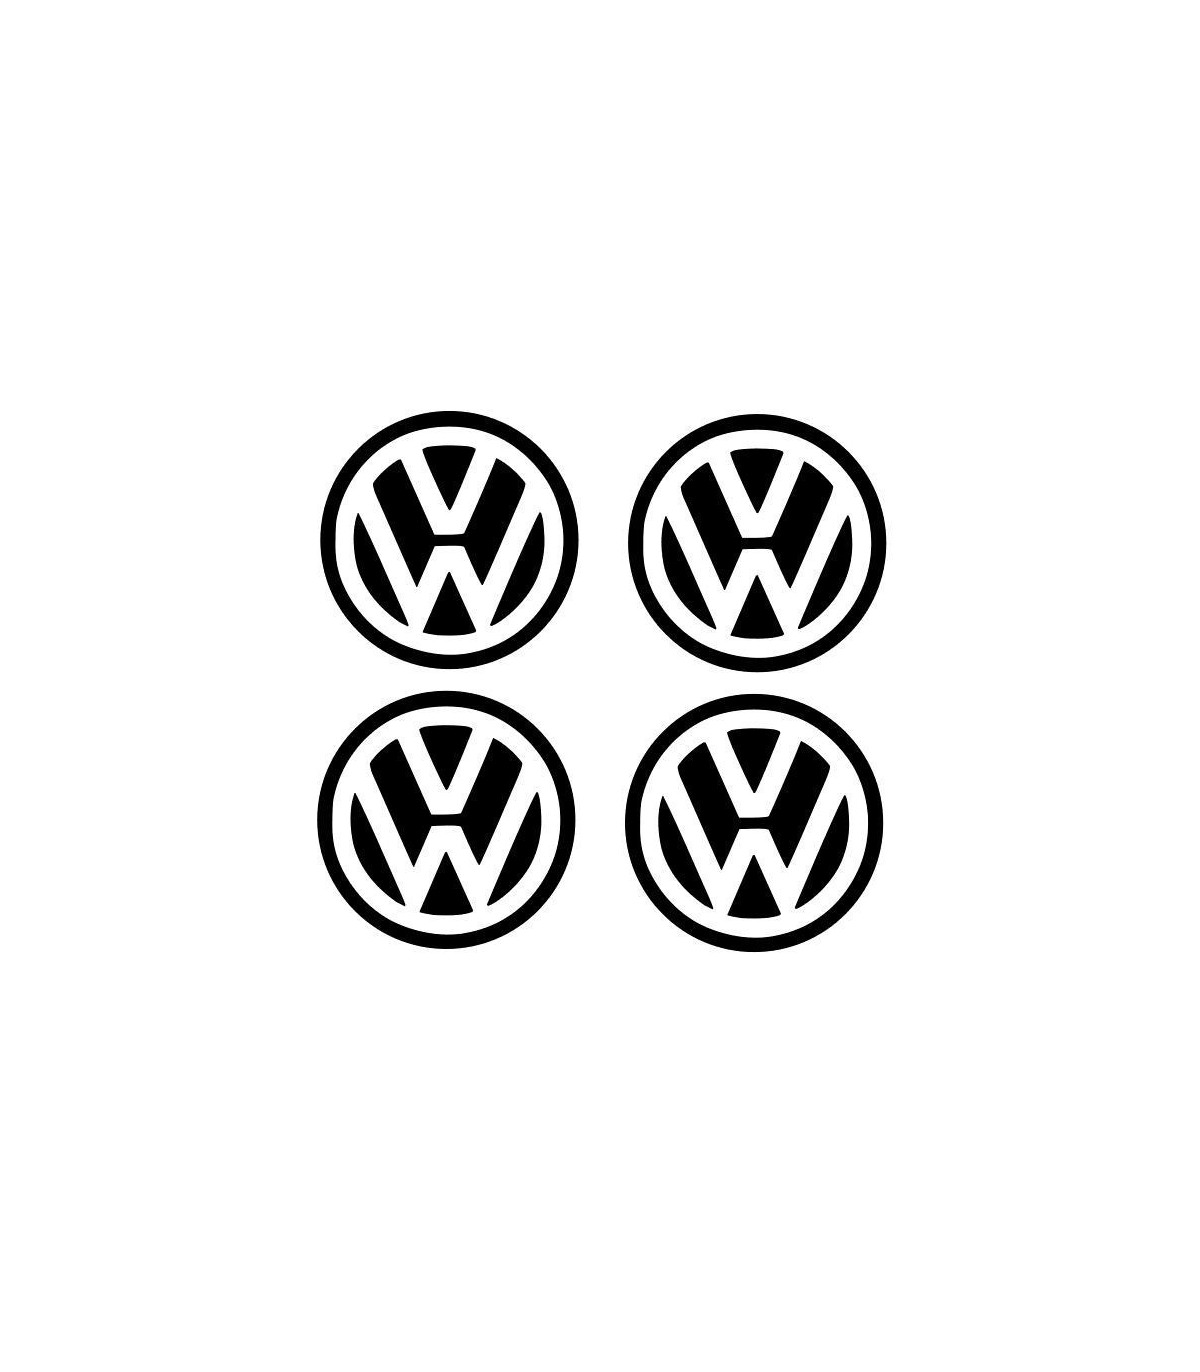 https://grafikstick.com/2026-superlarge_default/grafikstick-stickers-4x-centre-de-roue-vw-60mm-couleur-de-la-photo-vw-blanc-et-fond-noir-couleur-au-choix-a-preciser.jpg